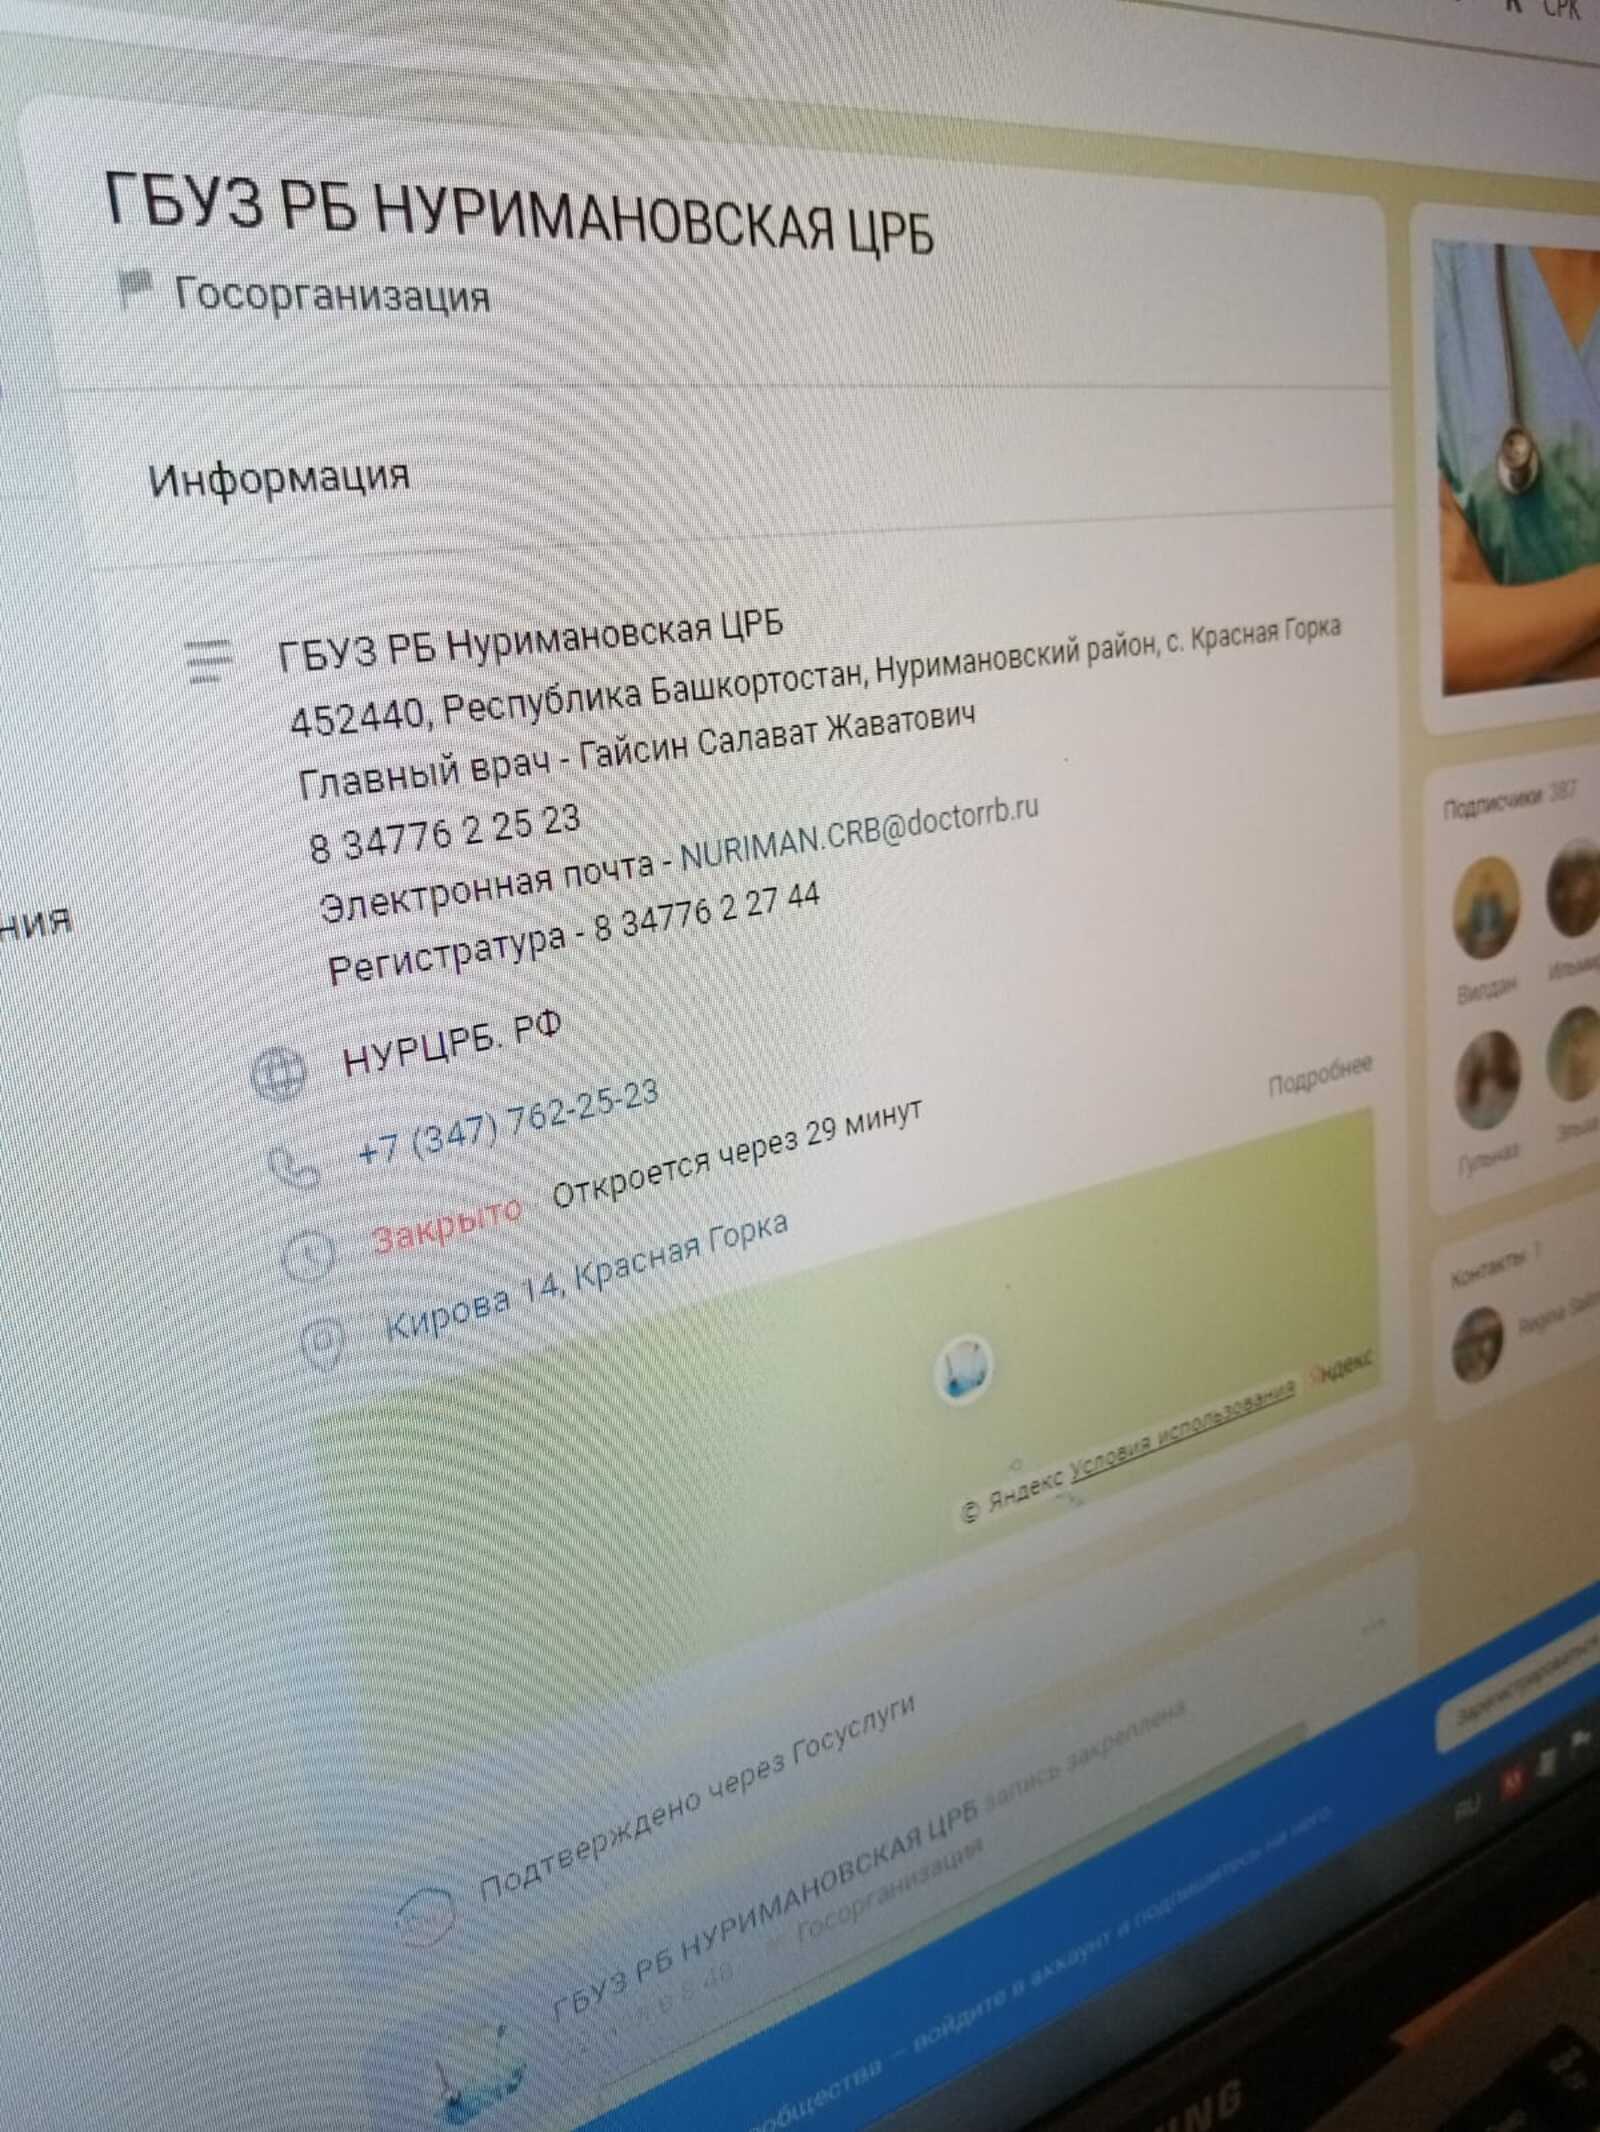 Статус госорганизации в соцсетях подтвердили 65 медучреждений из Башкортостана